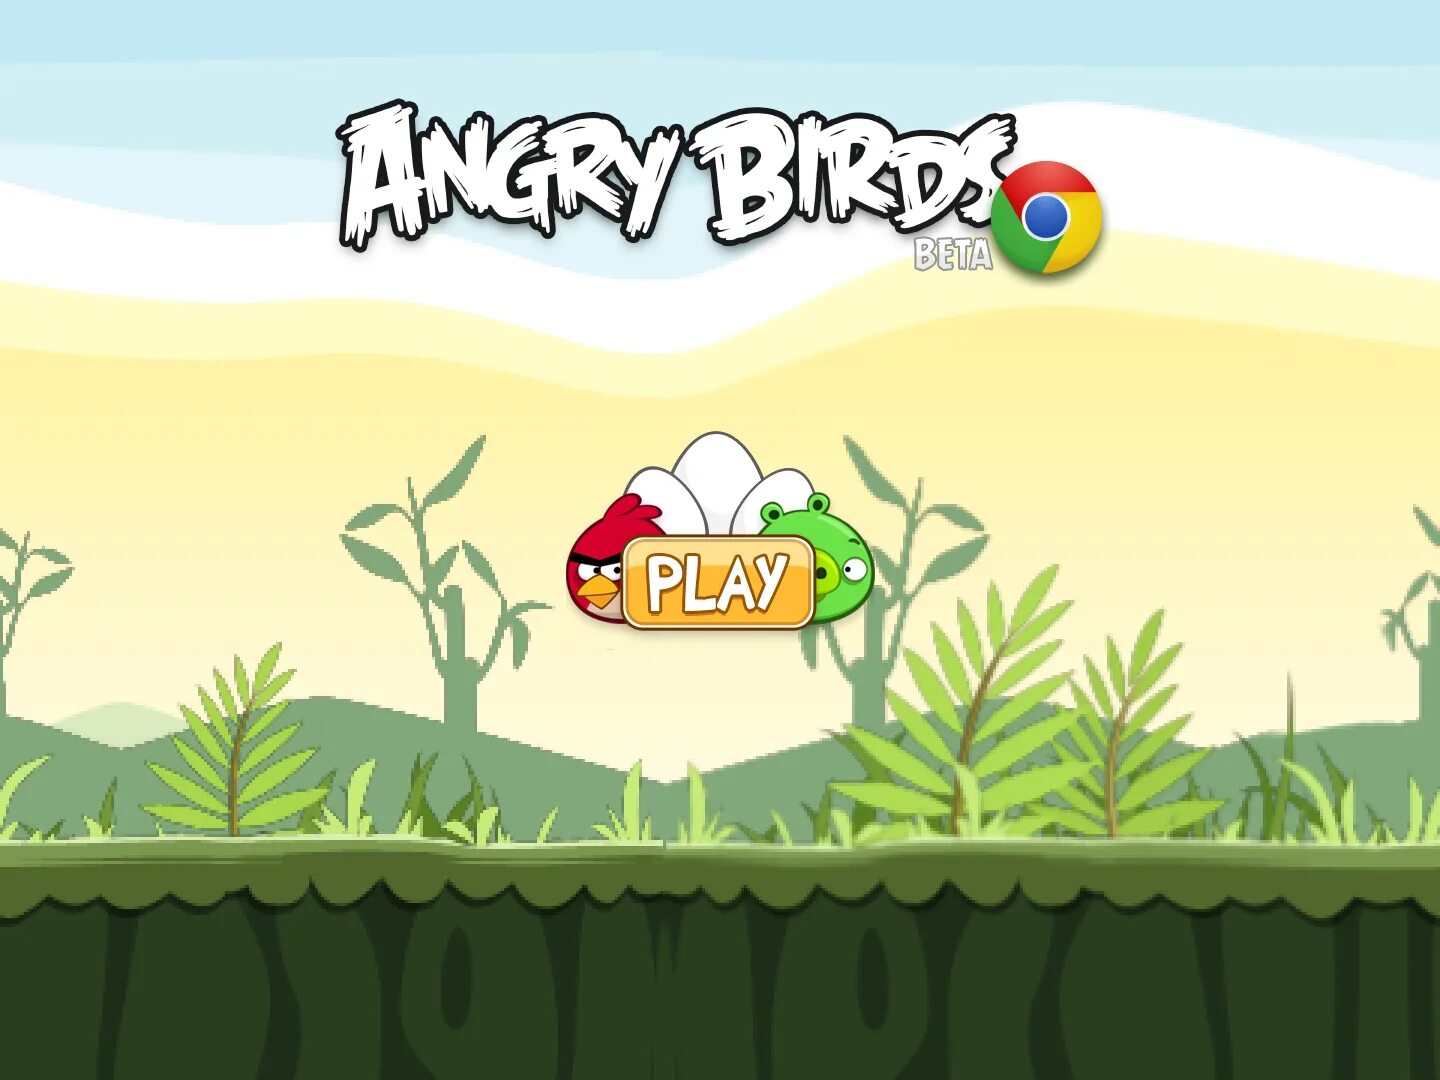 Birds chrome. Angry Birds Chrome. Angry Birds Chrome играть. Angry Birds Chrome Beta. Angry Birds Chrome (Remake).